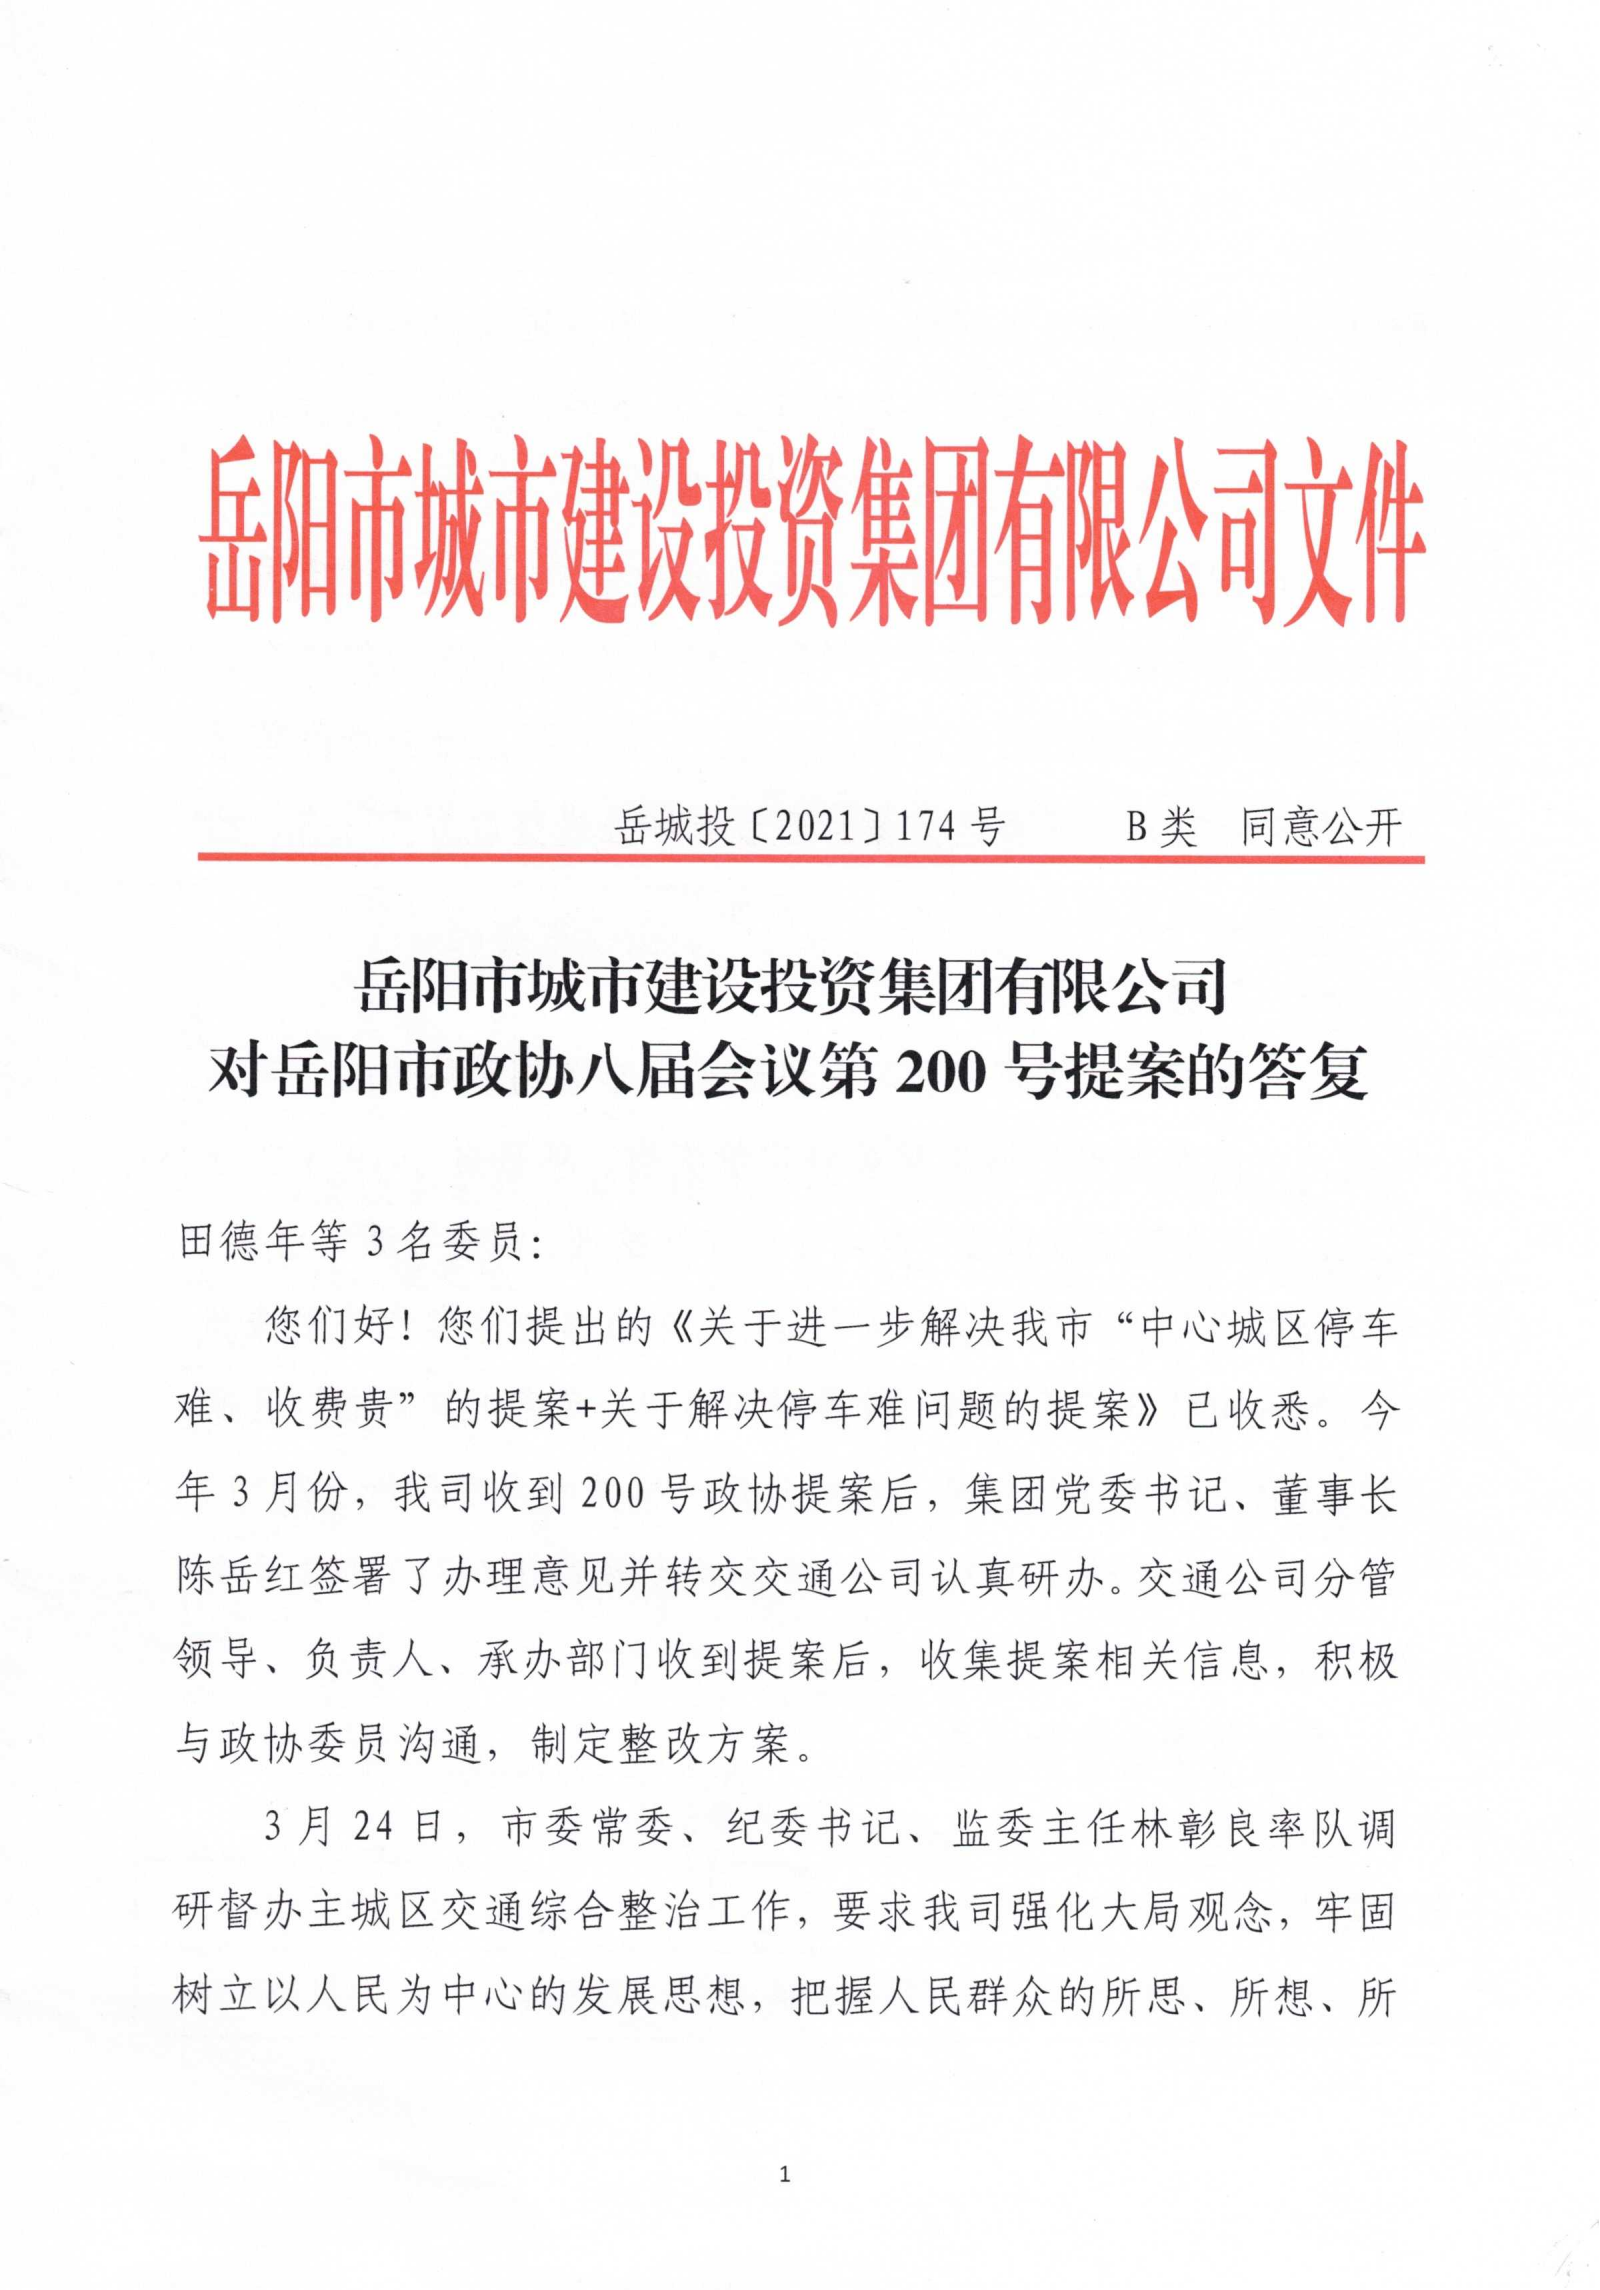 对岳阳市政协八届会议第200号提案的答复_00.png